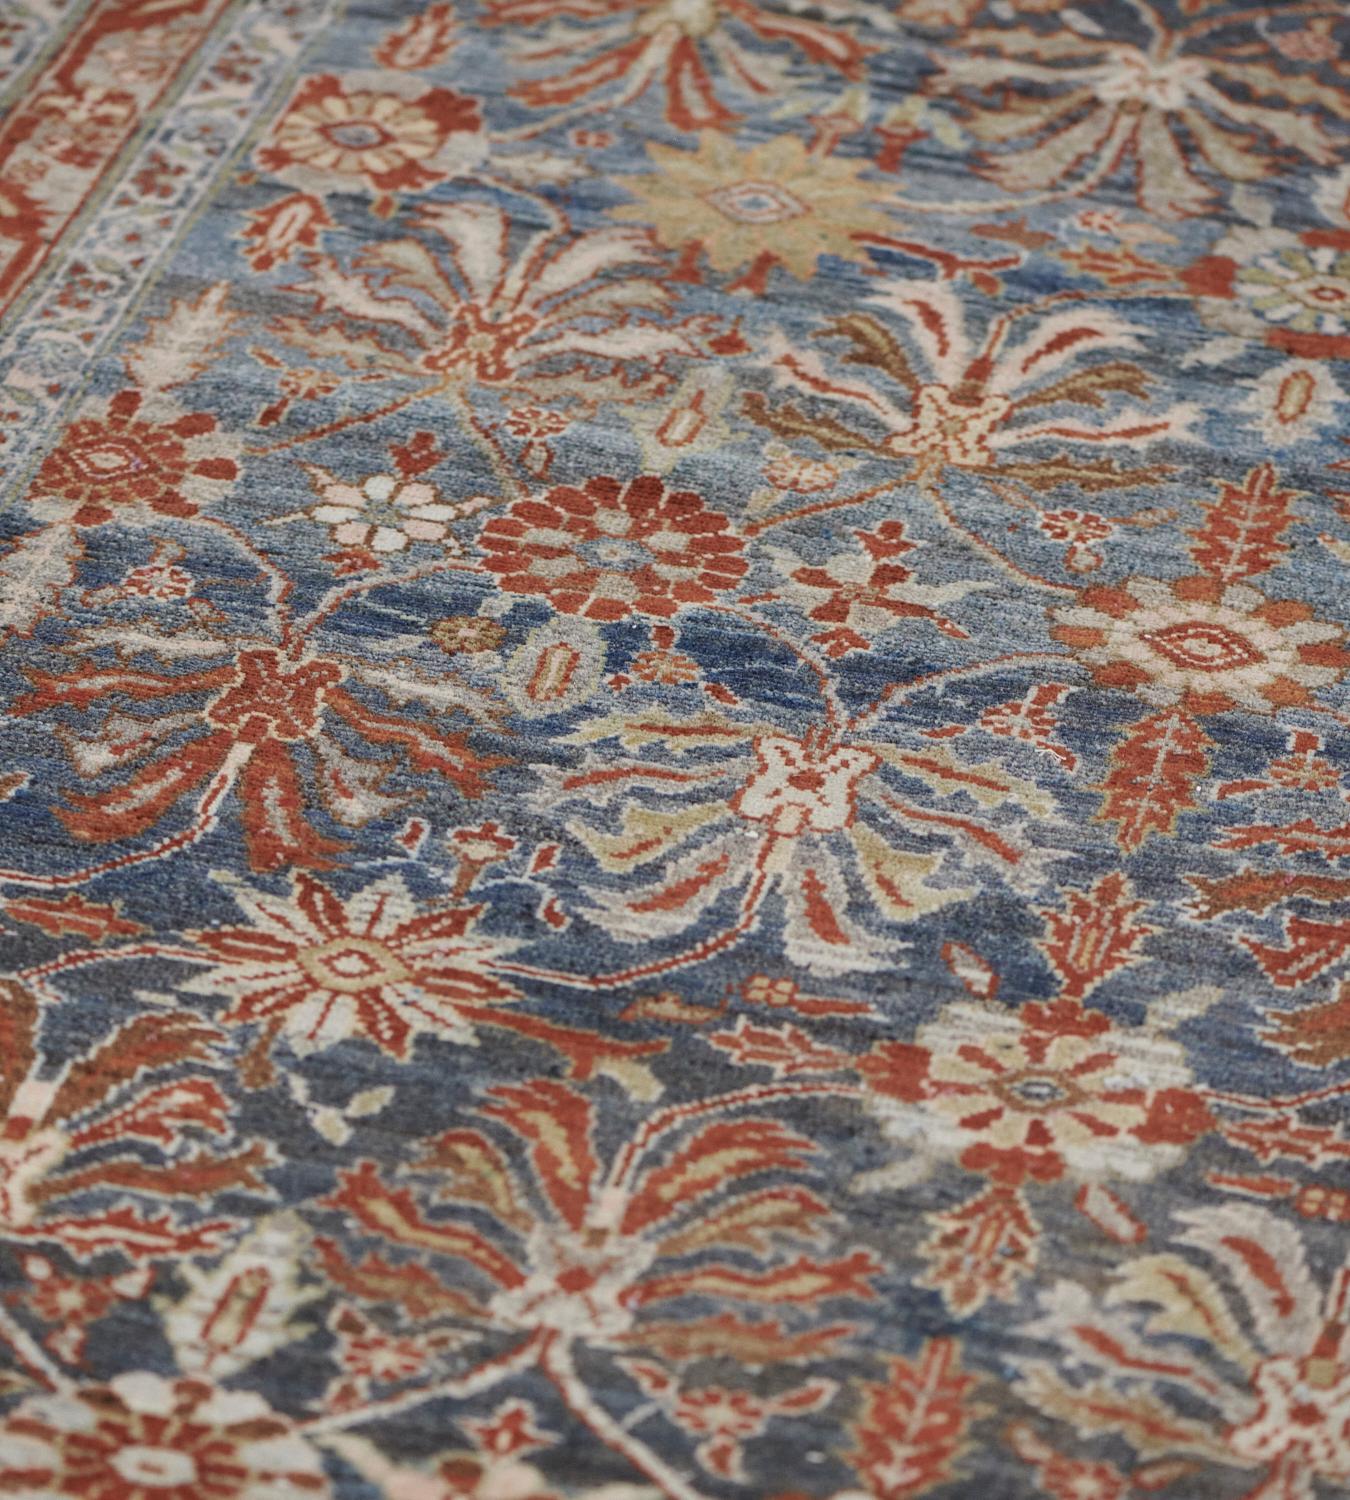 Ce tapis Malayer ancien présente un champ bleu nuancé avec un motif général de palmettes et de plantes fleuries stylisées ivoire, brun-renard et jaune sable reliées par une délicate vigne florale, dans une étroite bordure bleu clair avec une feuille